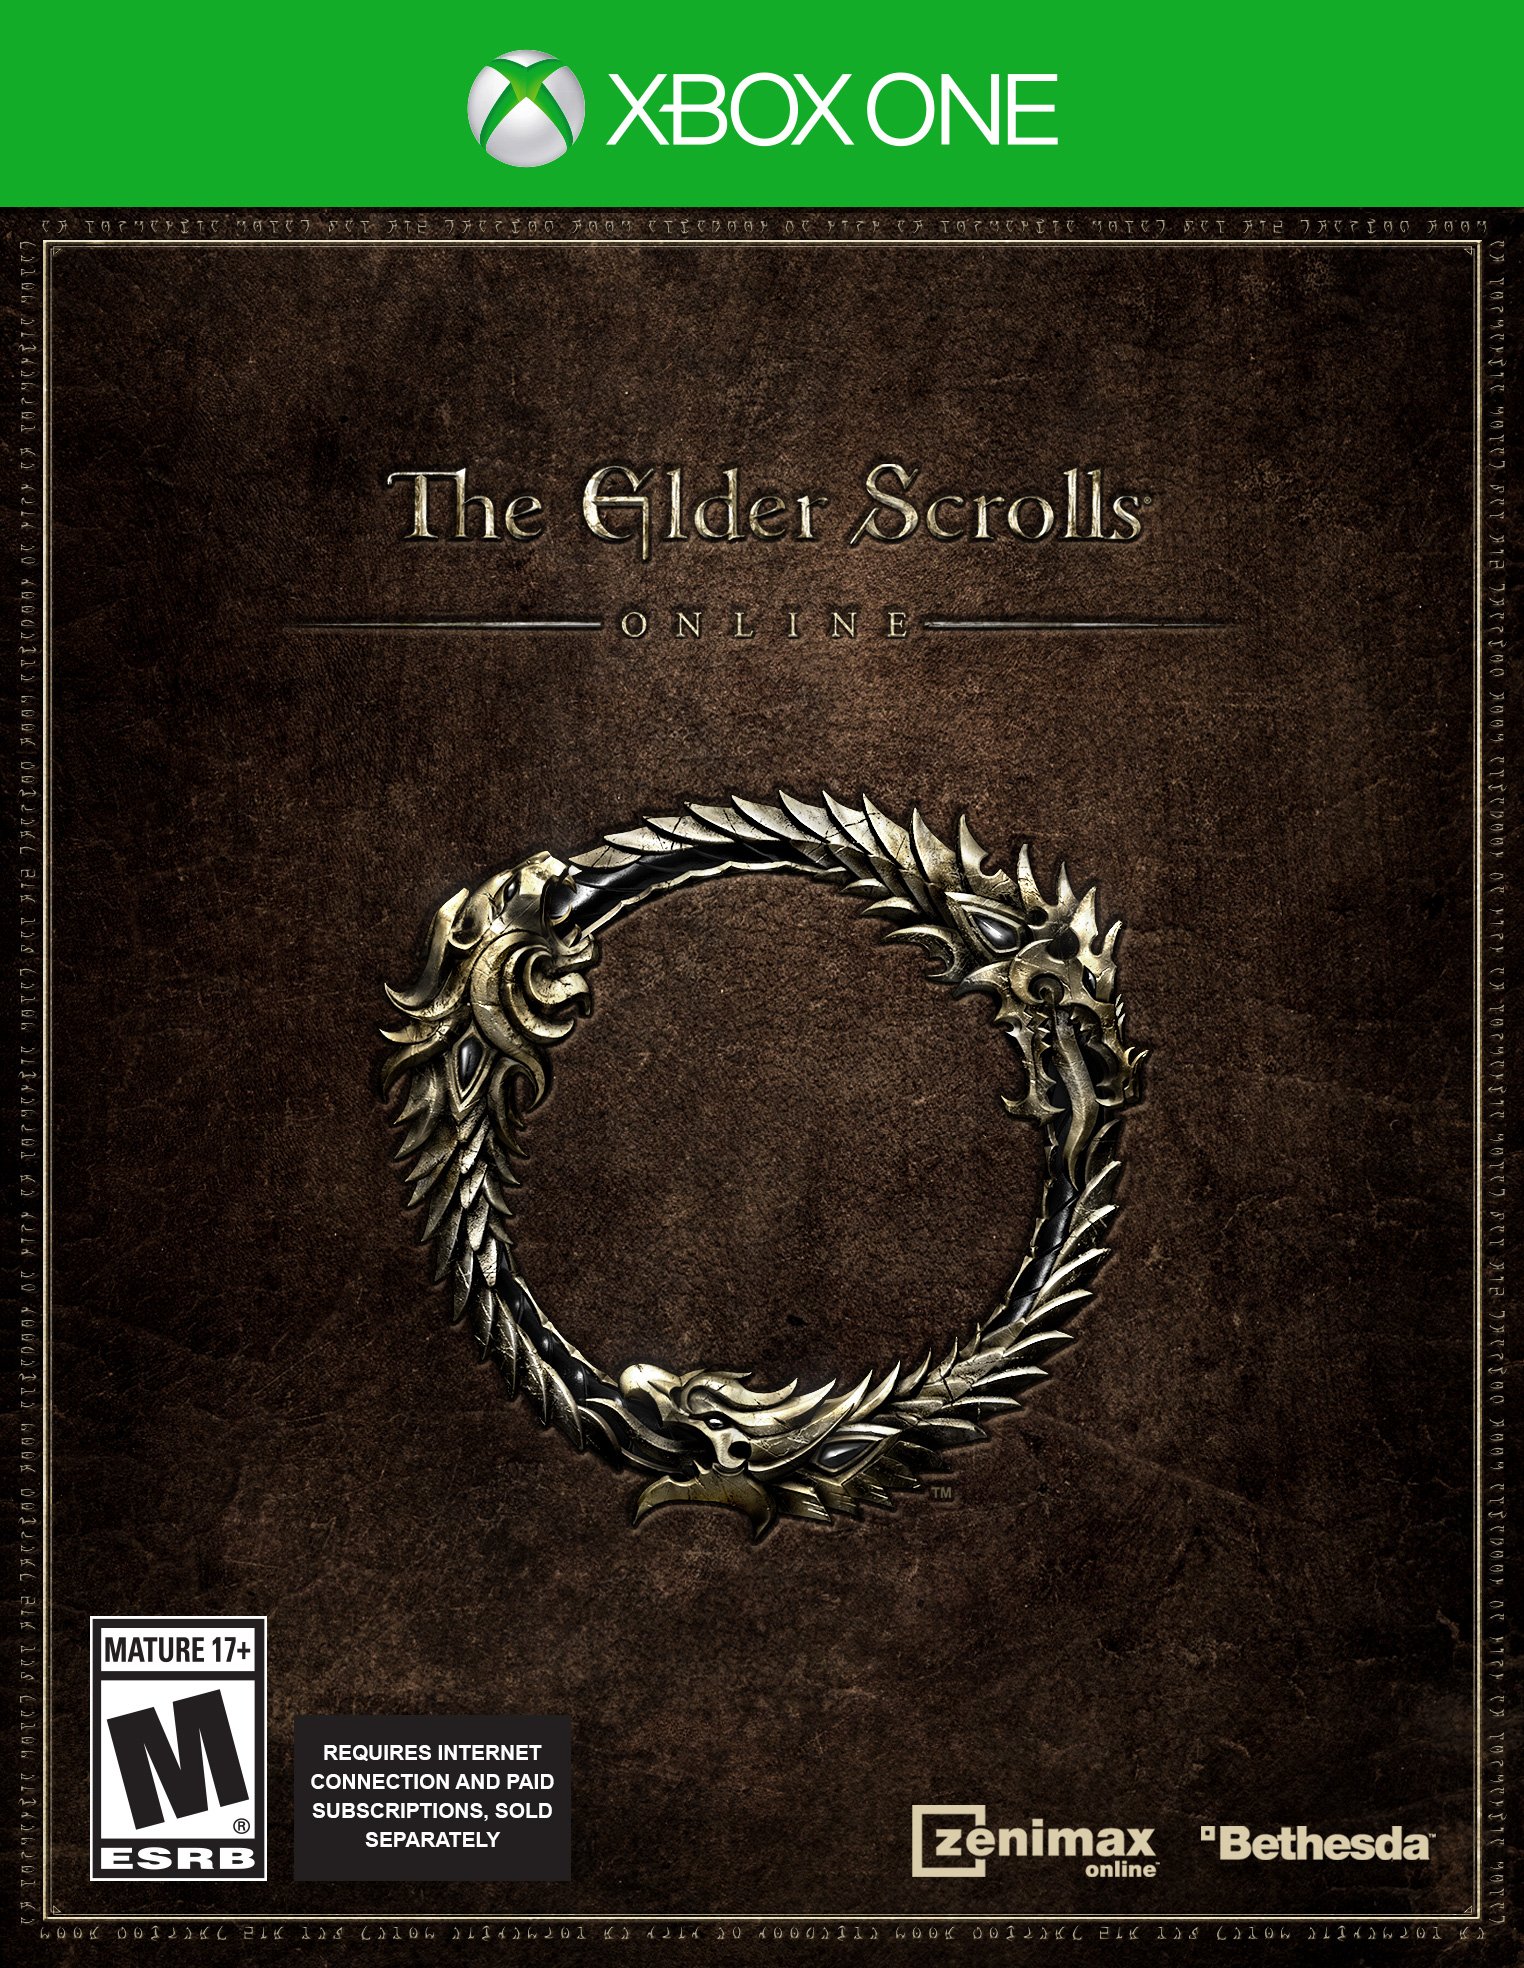 Release date for the elder scrolls online